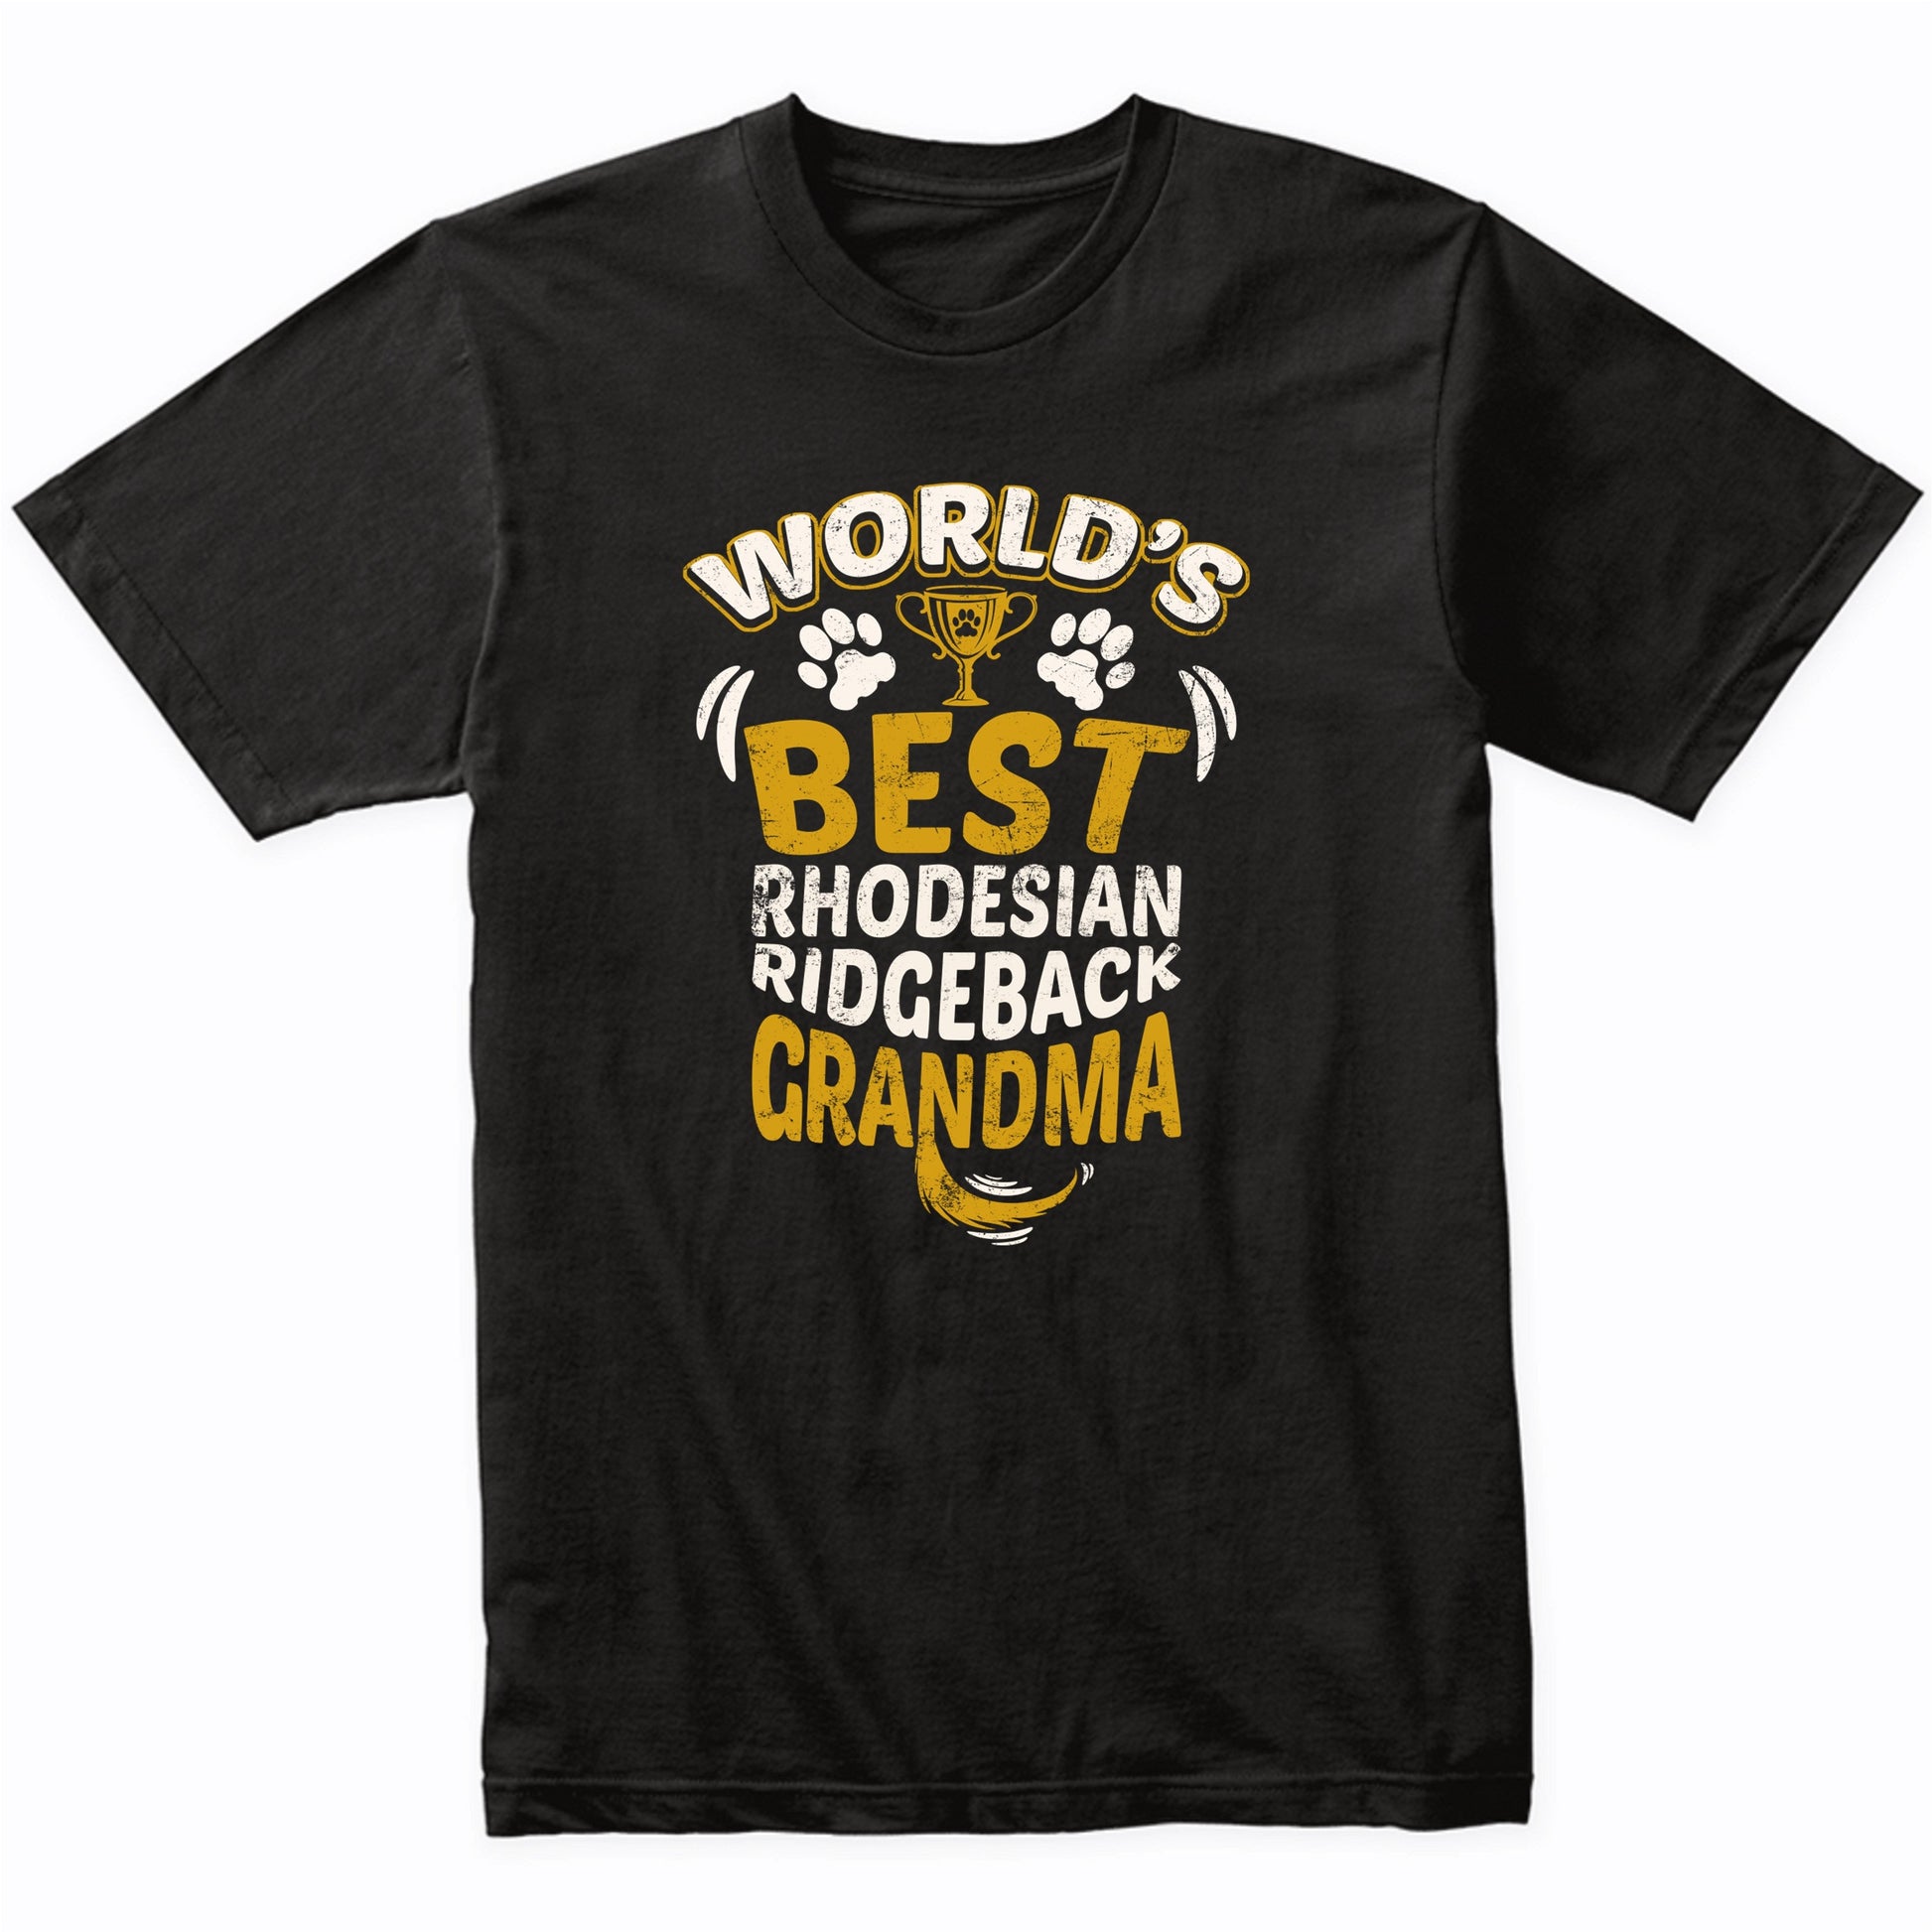 World's Best Rhodesian Ridgeback Grandma Graphic T-Shirt